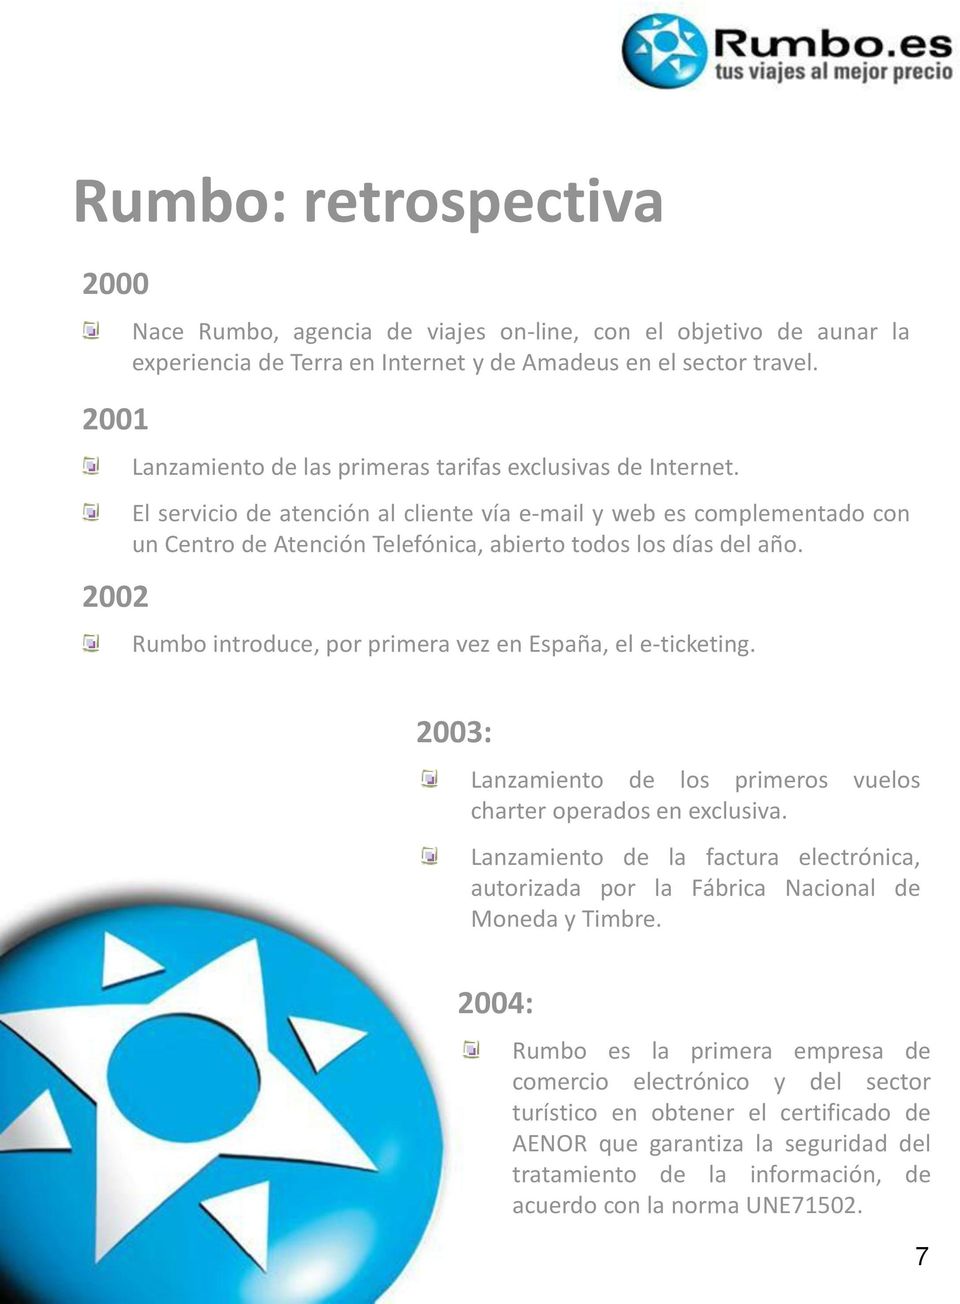 Rumbo introduce, por primera vez en España, el e-ticketing. 2003: Lanzamiento de los primeros vuelos charter operados en exclusiva.